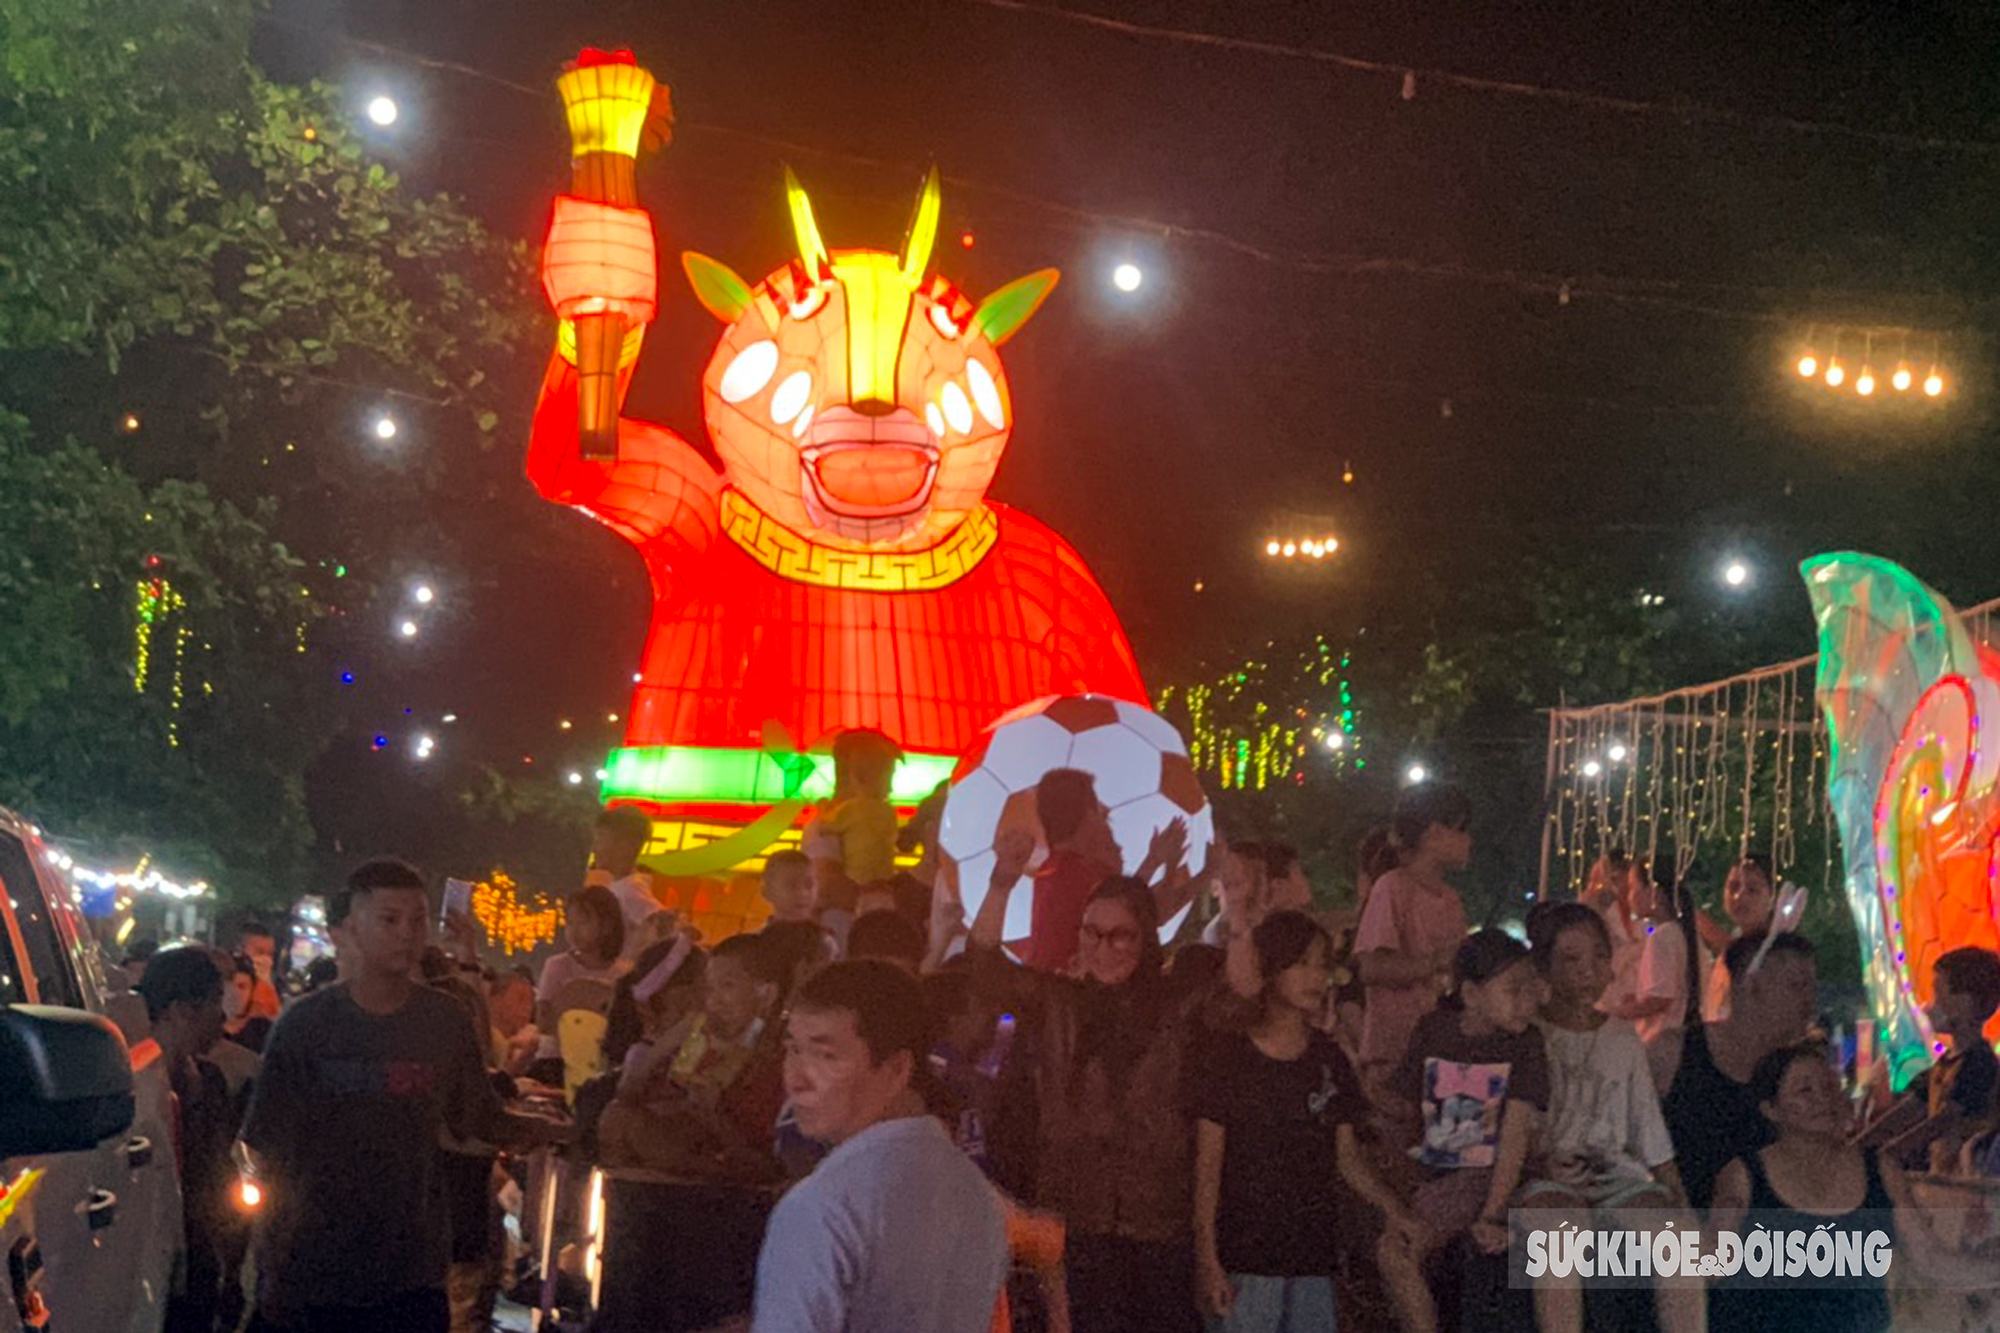 Háo hức lễ hội đèn Trung thu khổng lồ ở Tuyên Quang